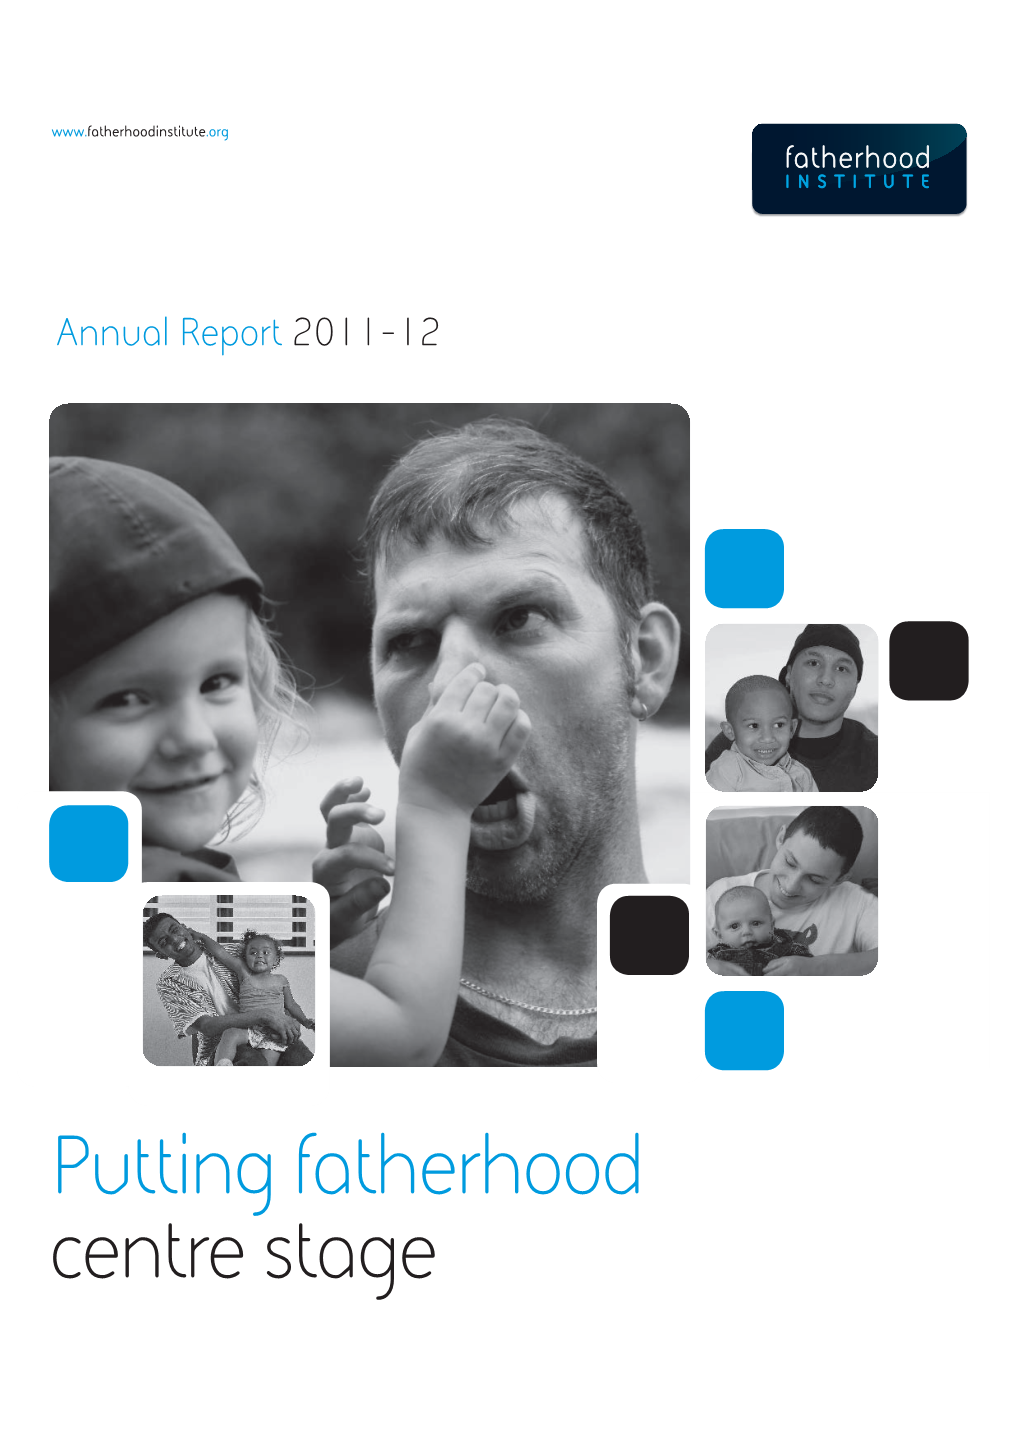 Fatherhood Institute Annual Report 2011-12